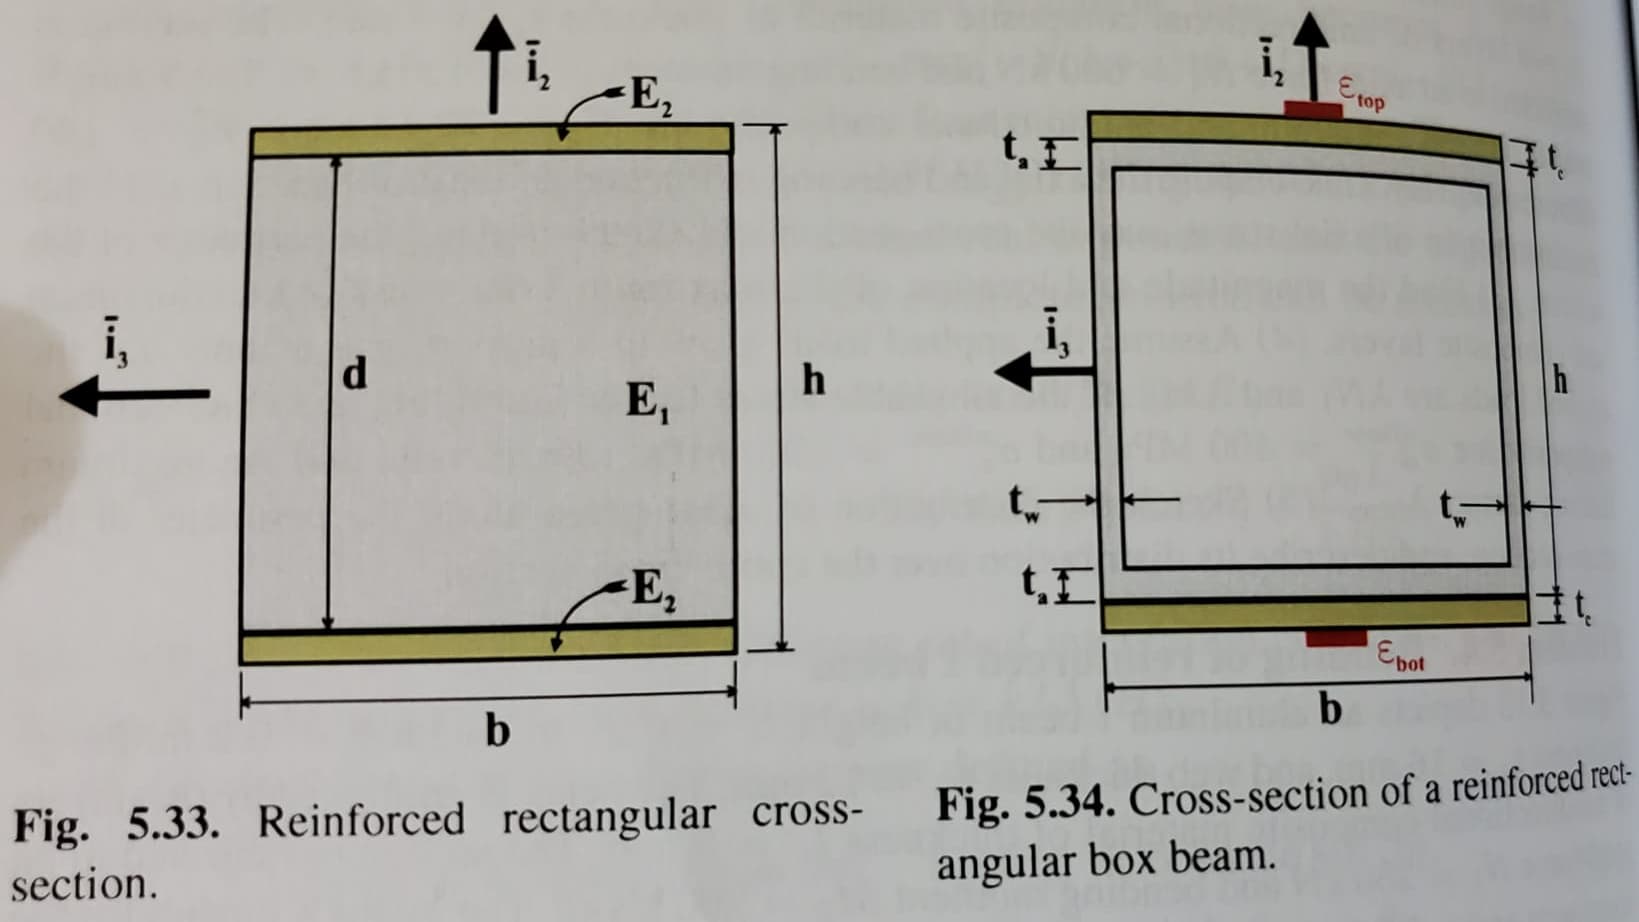 t.
top
E2
t, I
h
E,
E,
Epot
b
Fig. 5.34. Cross-section of a reinforced rect-
angular box beam.
Fig. 5.33. Reinforced rectangular cross-
section.
